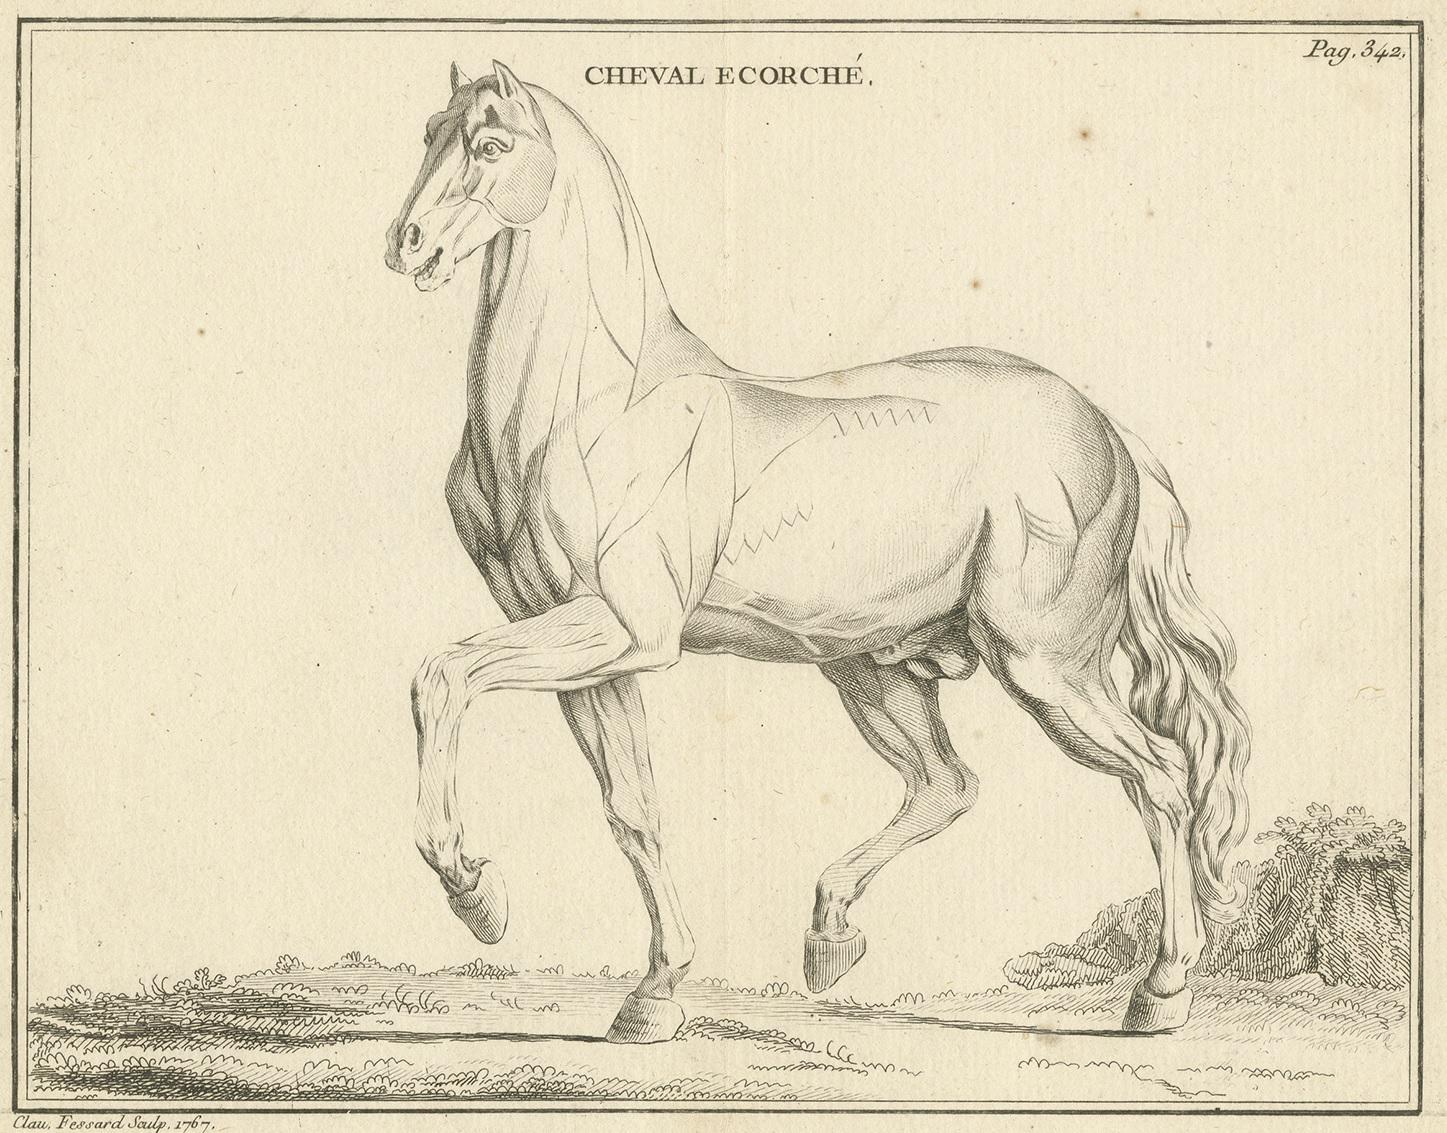 Gravure ancienne intitulée 'Cheval Ecorché'. Gravure sur cuivre d'un écorché de cheval. Un écorché est une figure dessinée, peinte ou sculptée montrant les muscles du corps sans peau. Cette gravure provient du 